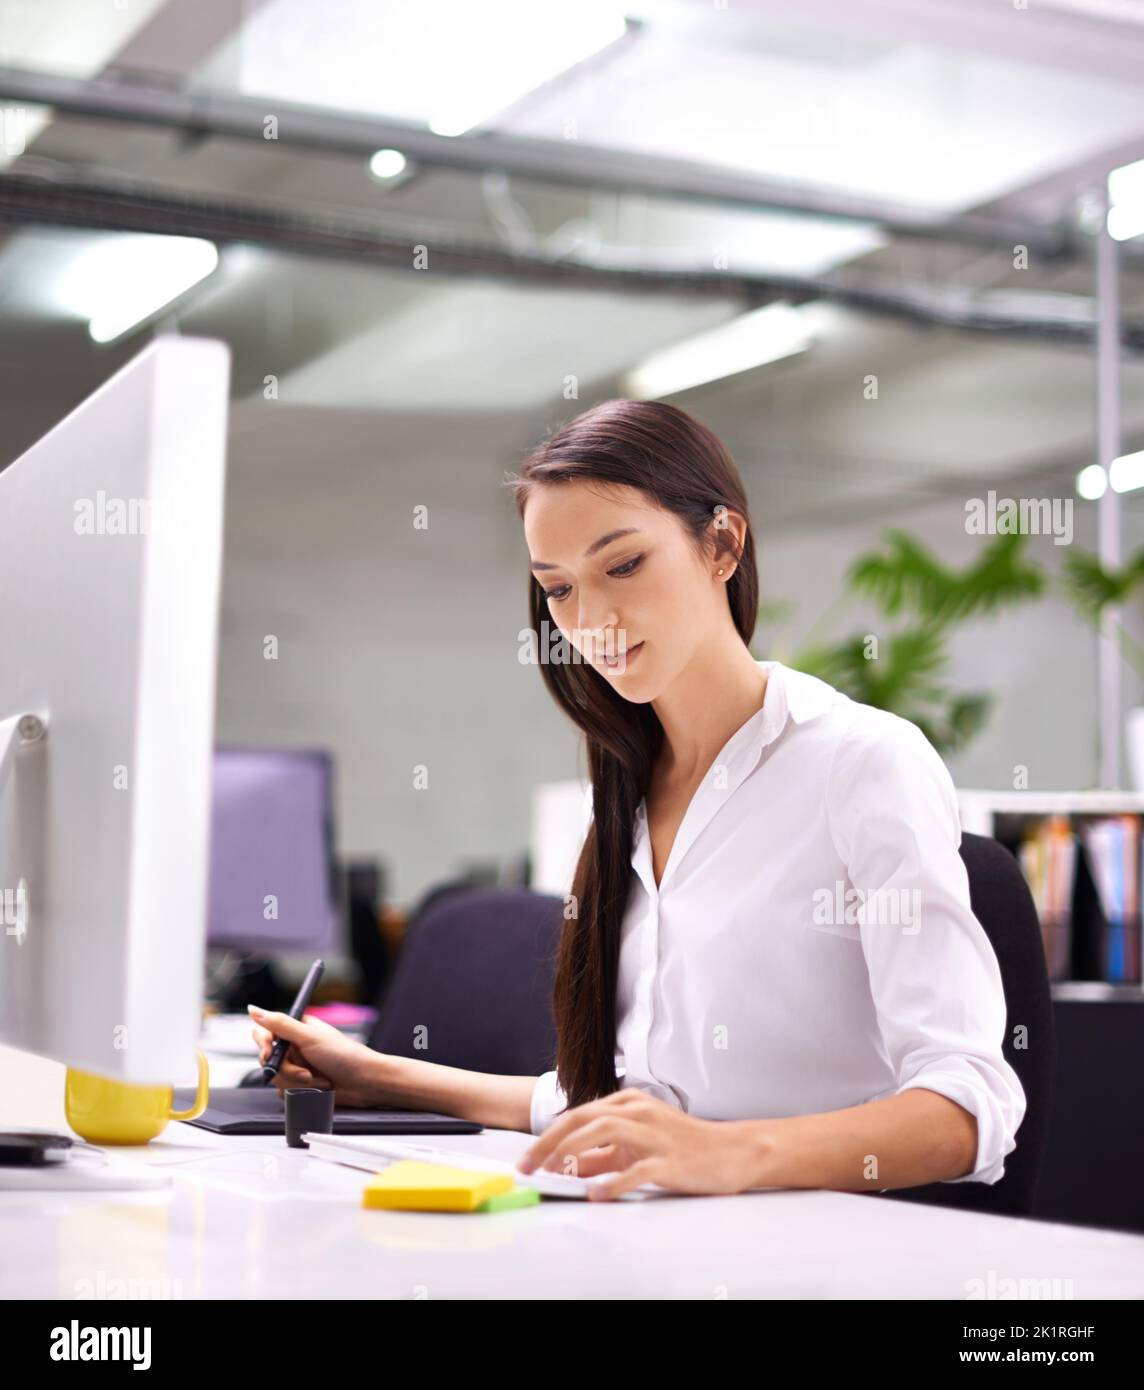 Eine attraktive junge Frau, die an ihrem Schreibtisch arbeitet. Stockfoto